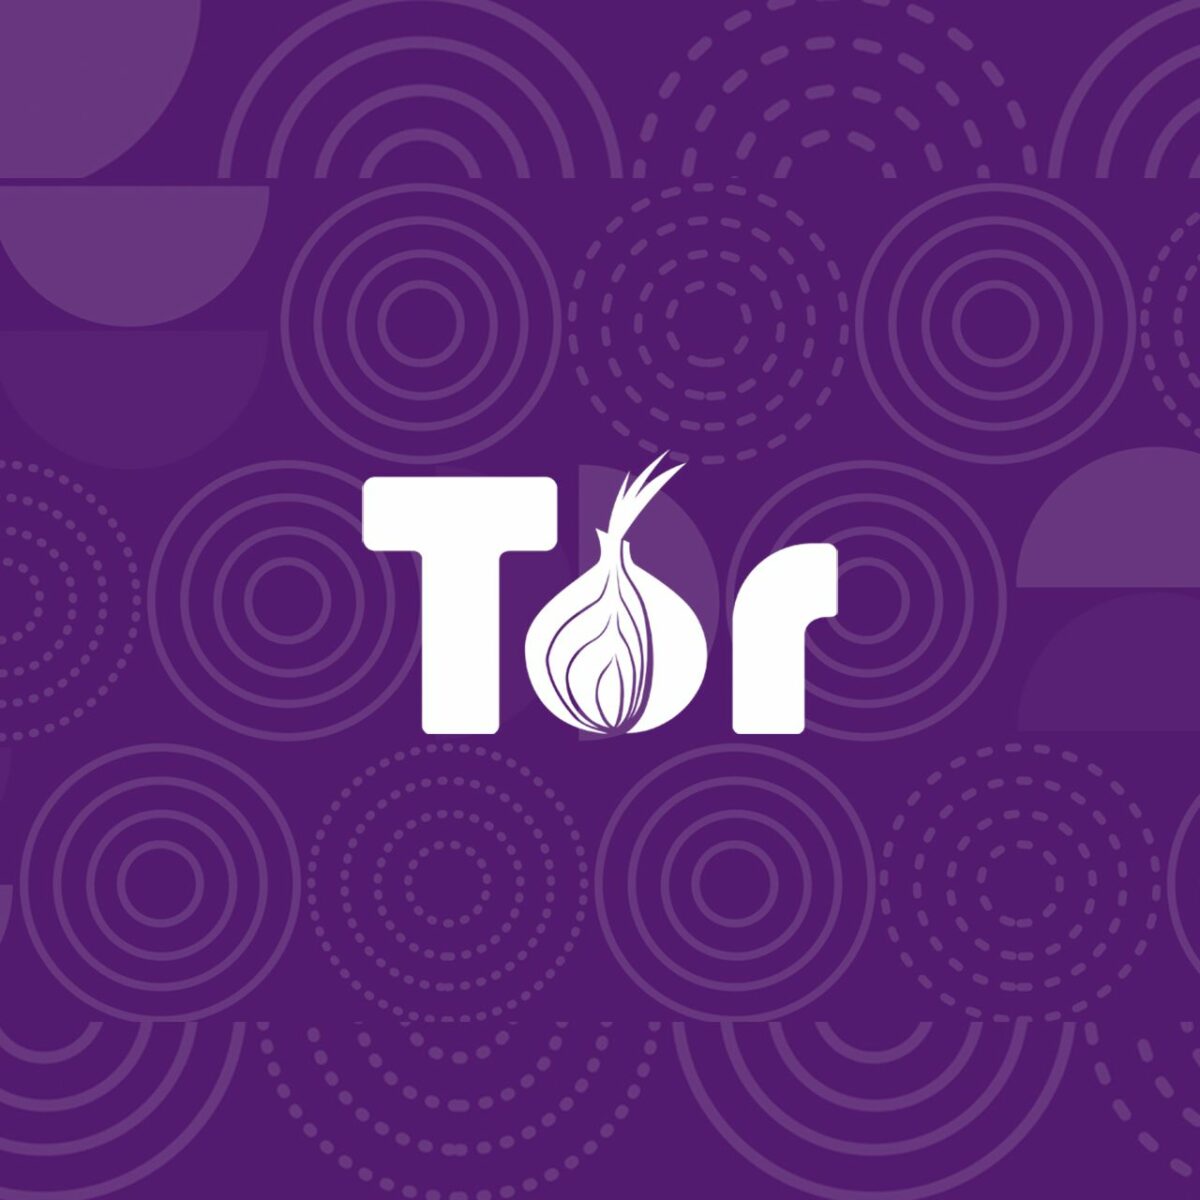 Tor browser win 10 hydra тор скачать браузер на планшет андроид бесплатно вход на гидру